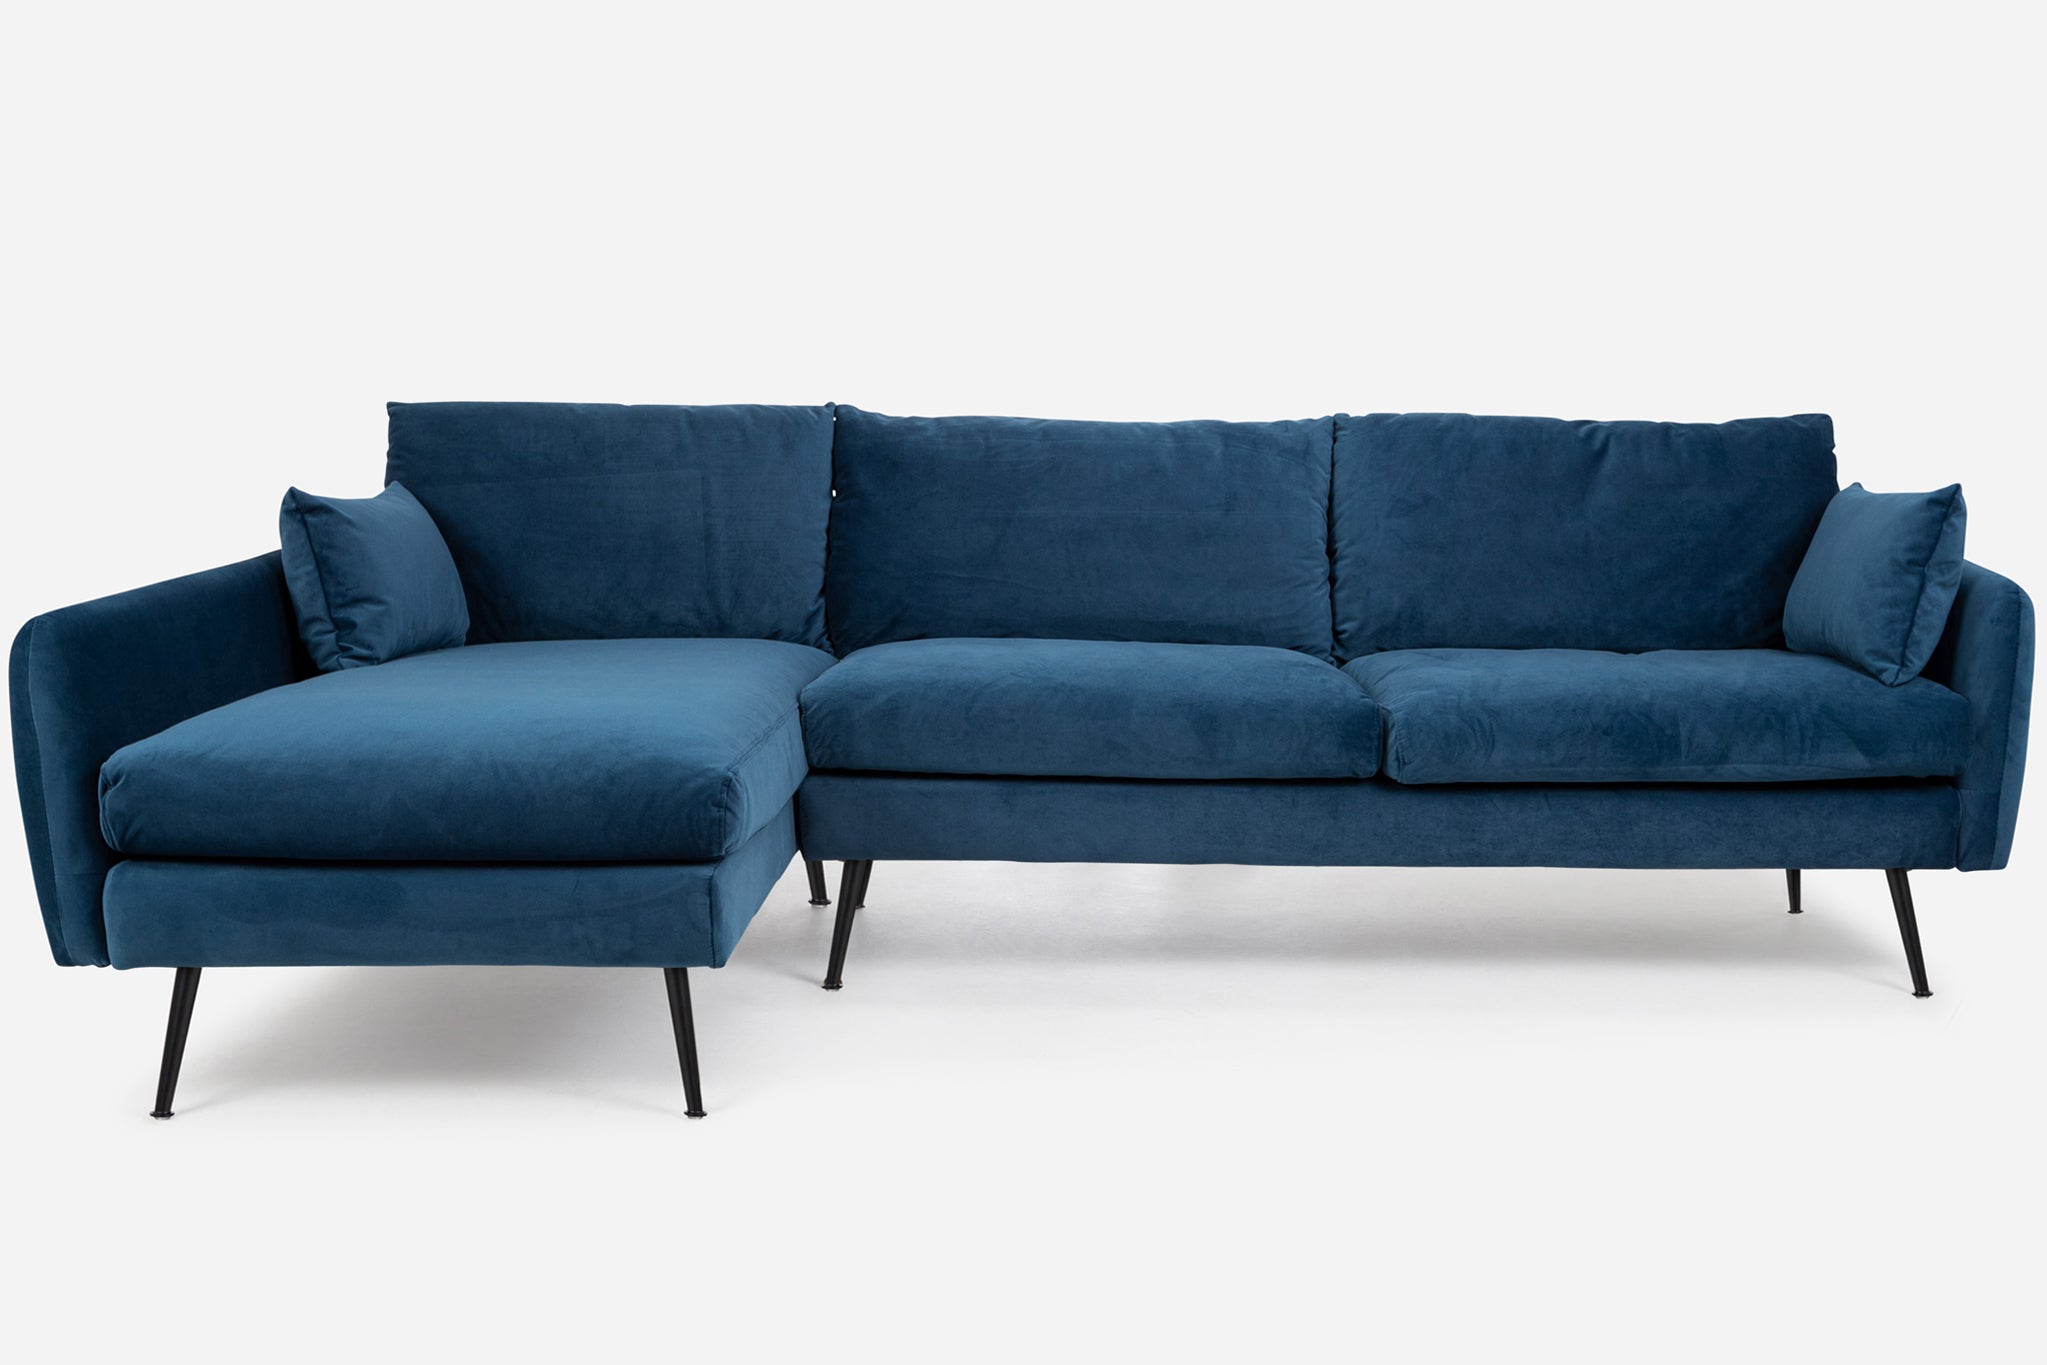 park sectional sofa shown in blue velvet with black legs left facing